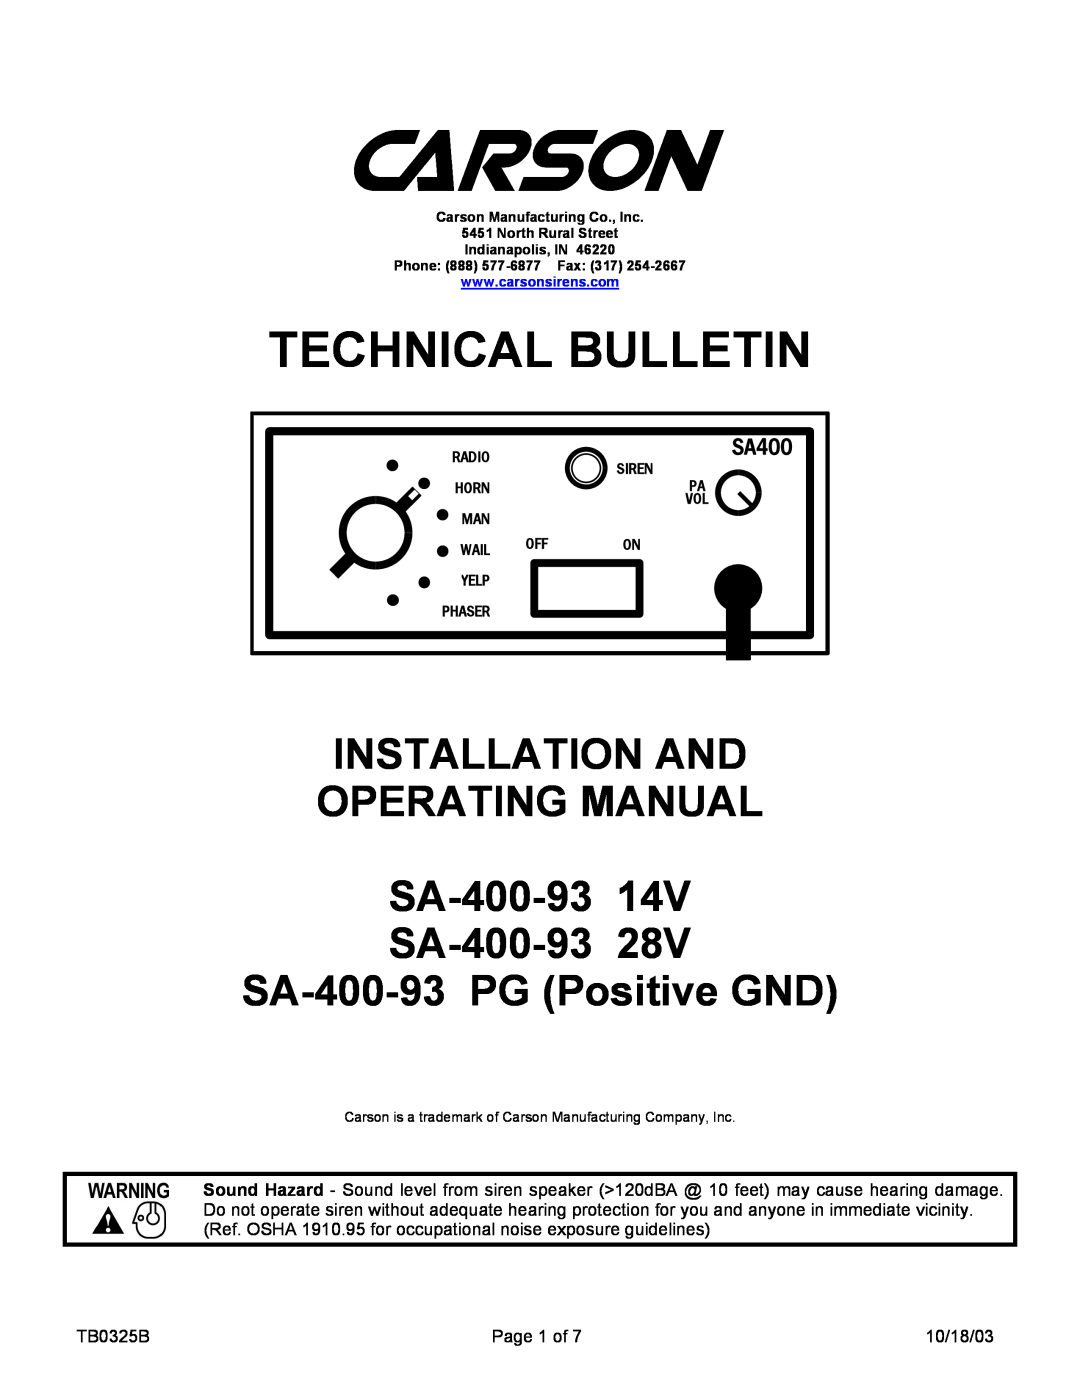 Carson SA-400-93 PG, SA-400-93 14V manual Technical Bulletin, INSTALLATION AND OPERATING MANUAL SA-400-9314V, SA400 